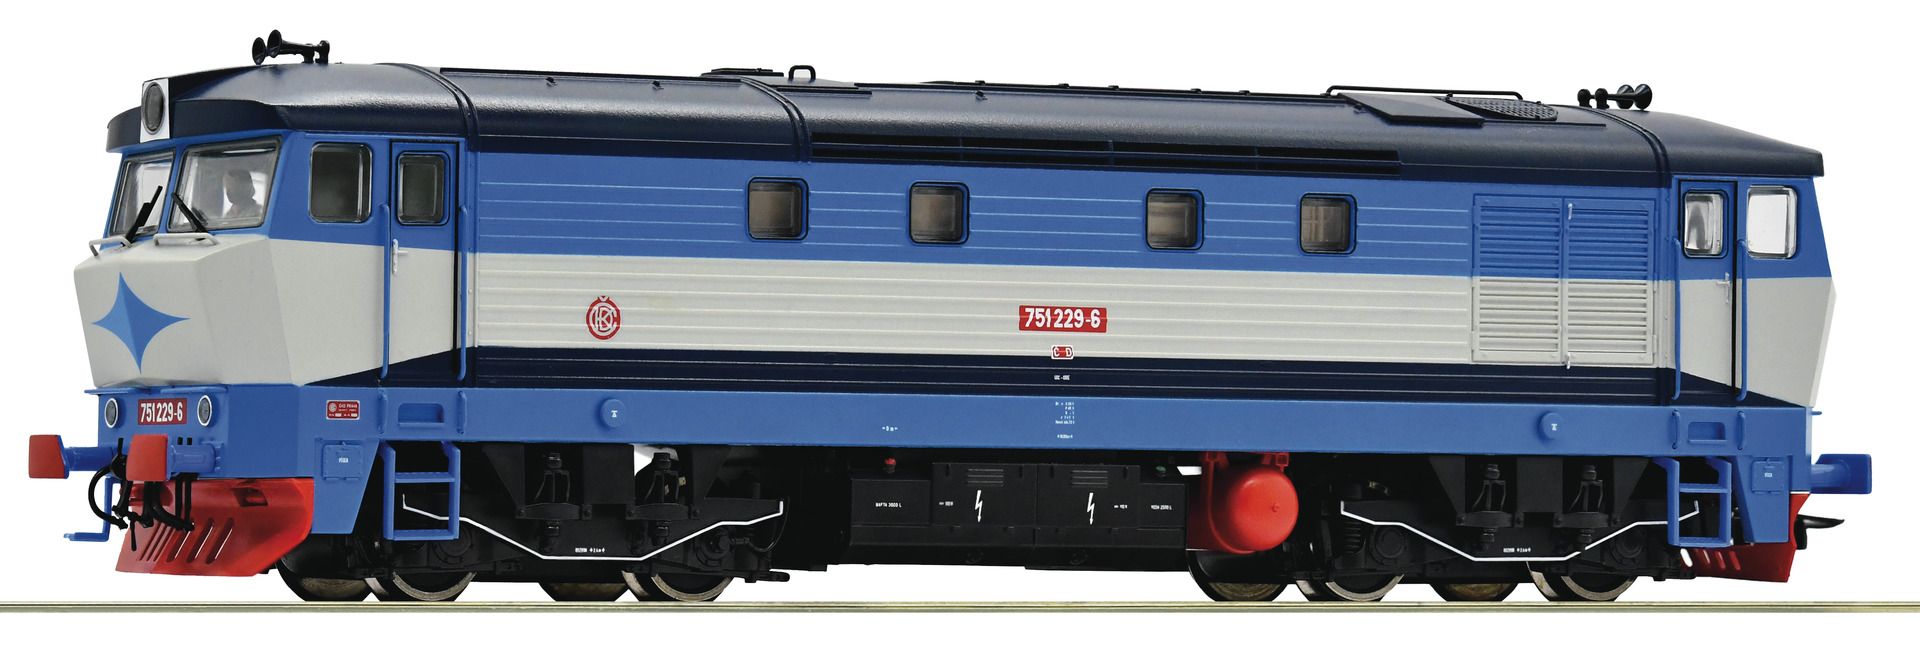 Roco 70924 - Diesellok 751 229-6, CD, Ep.V